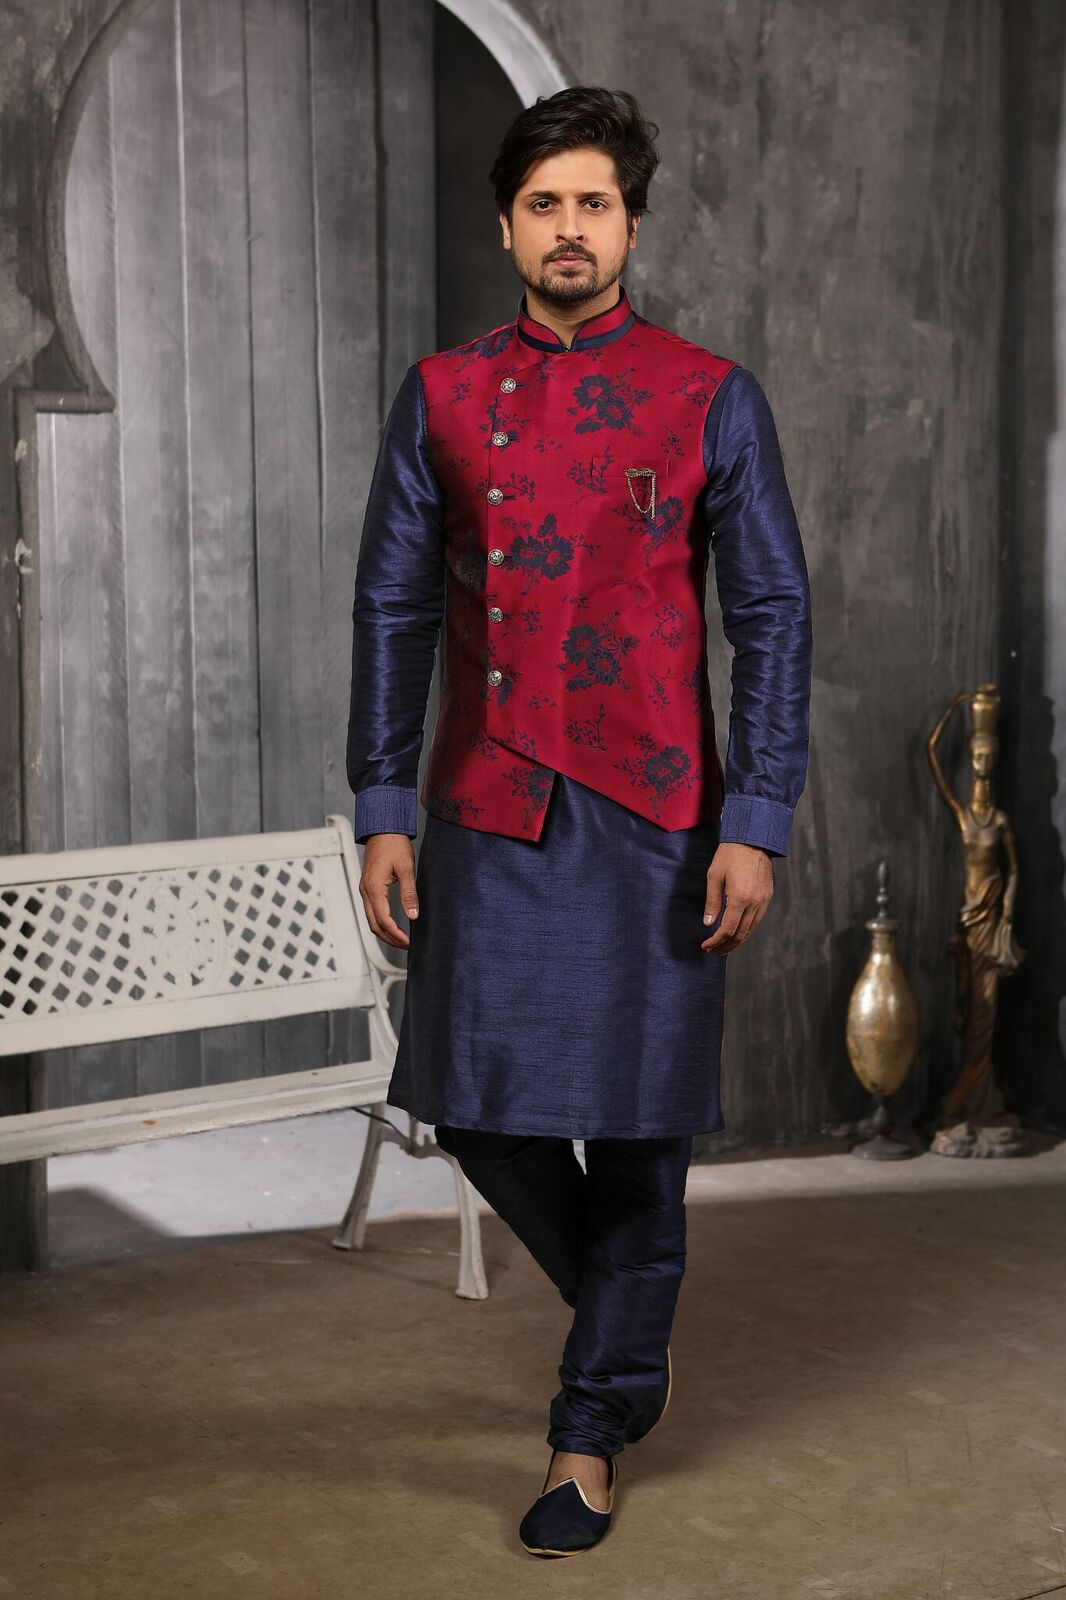 Indowestrn wedding and partywear stylish mens wear 